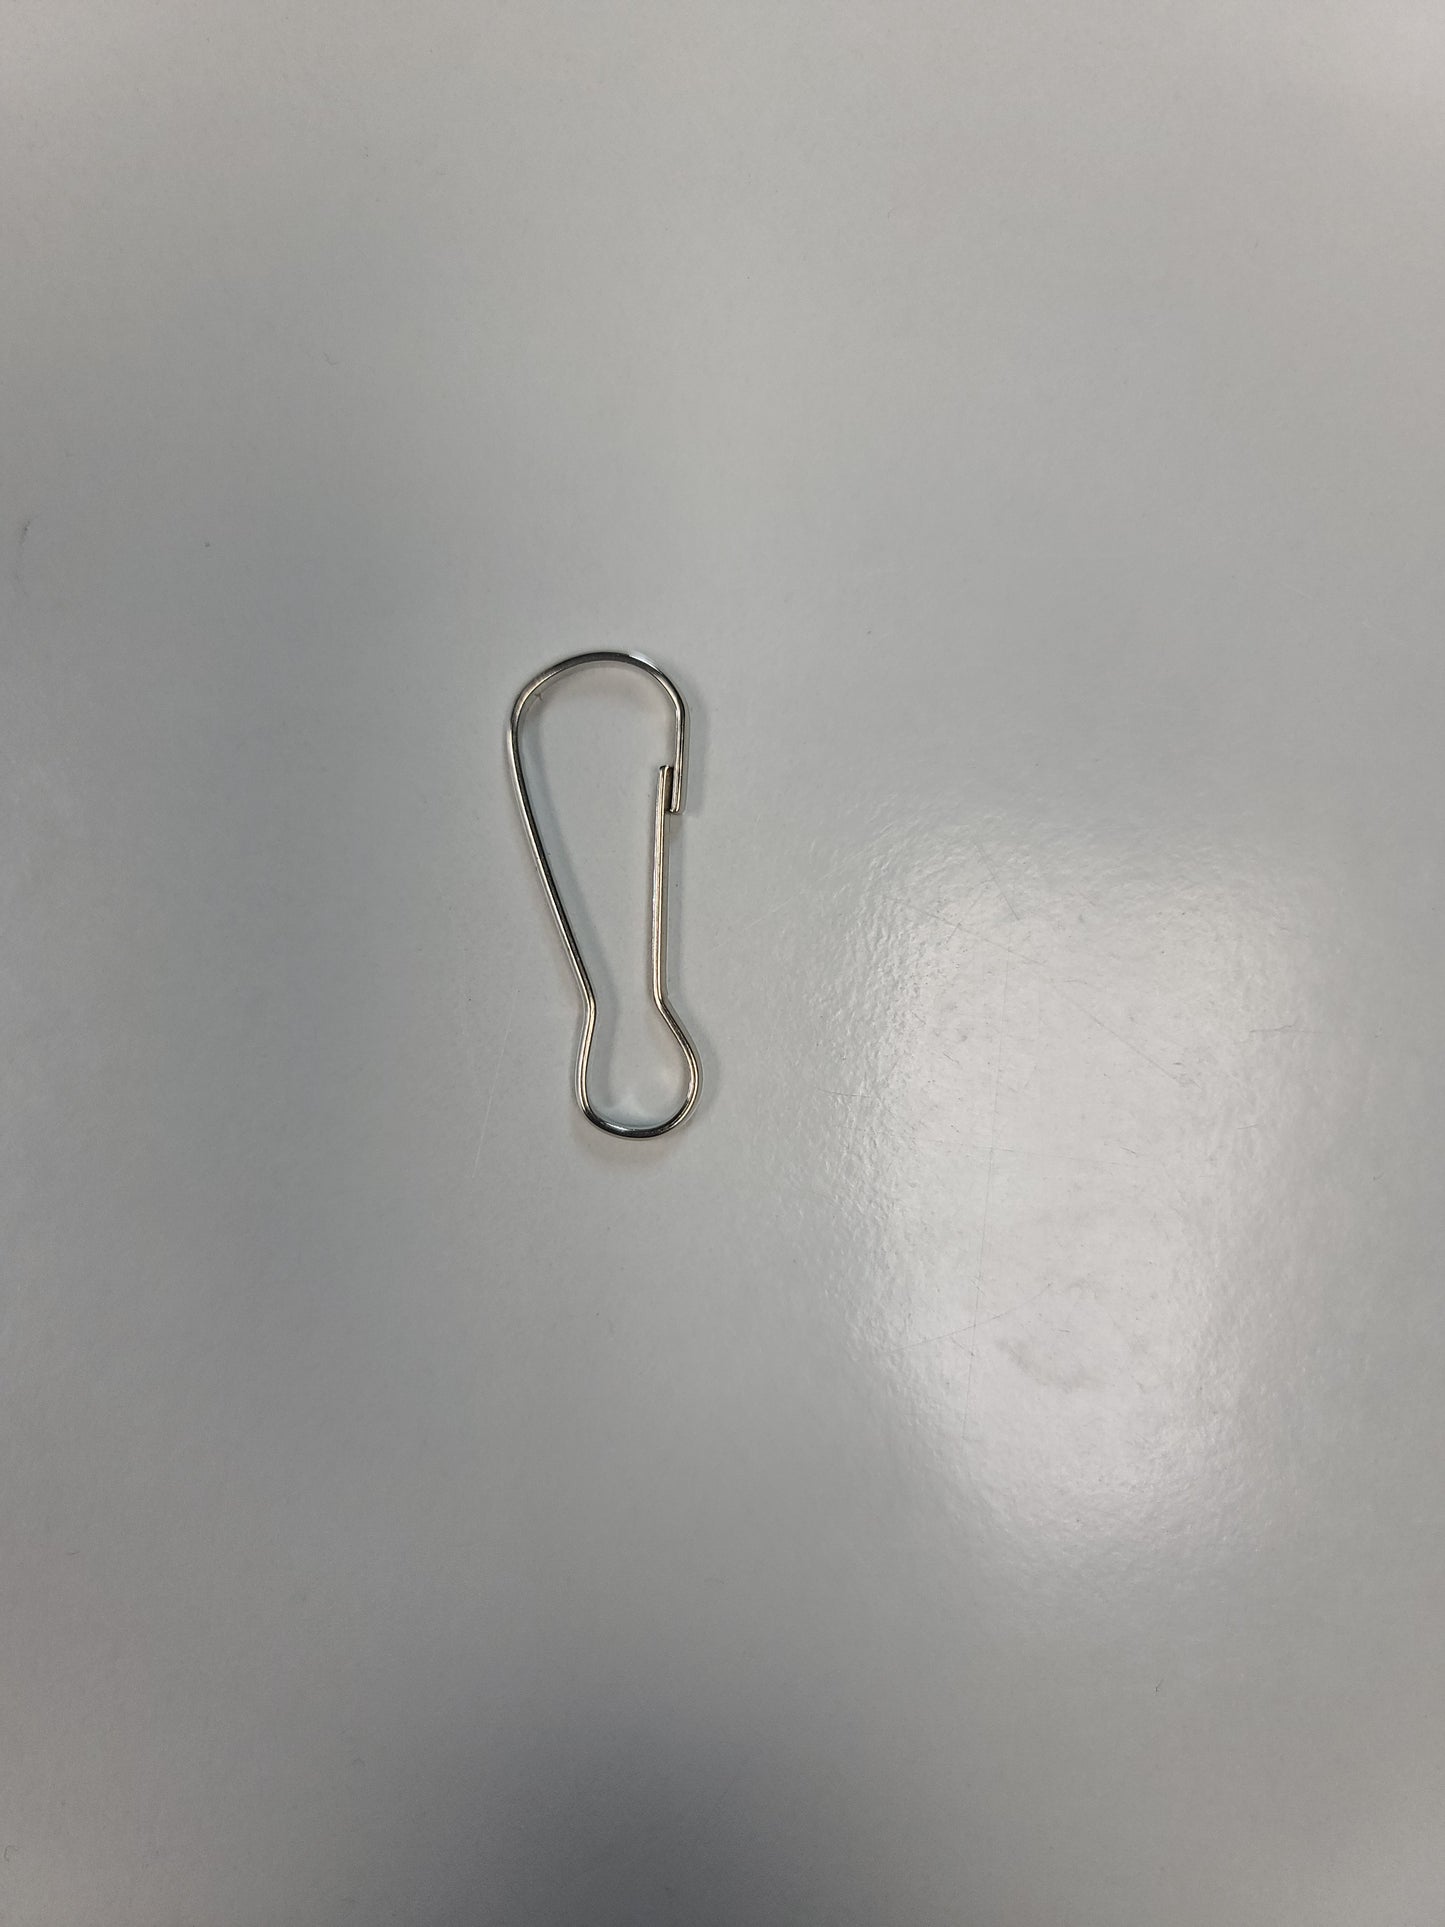 Mitten clips/keychain holder - 10 pack